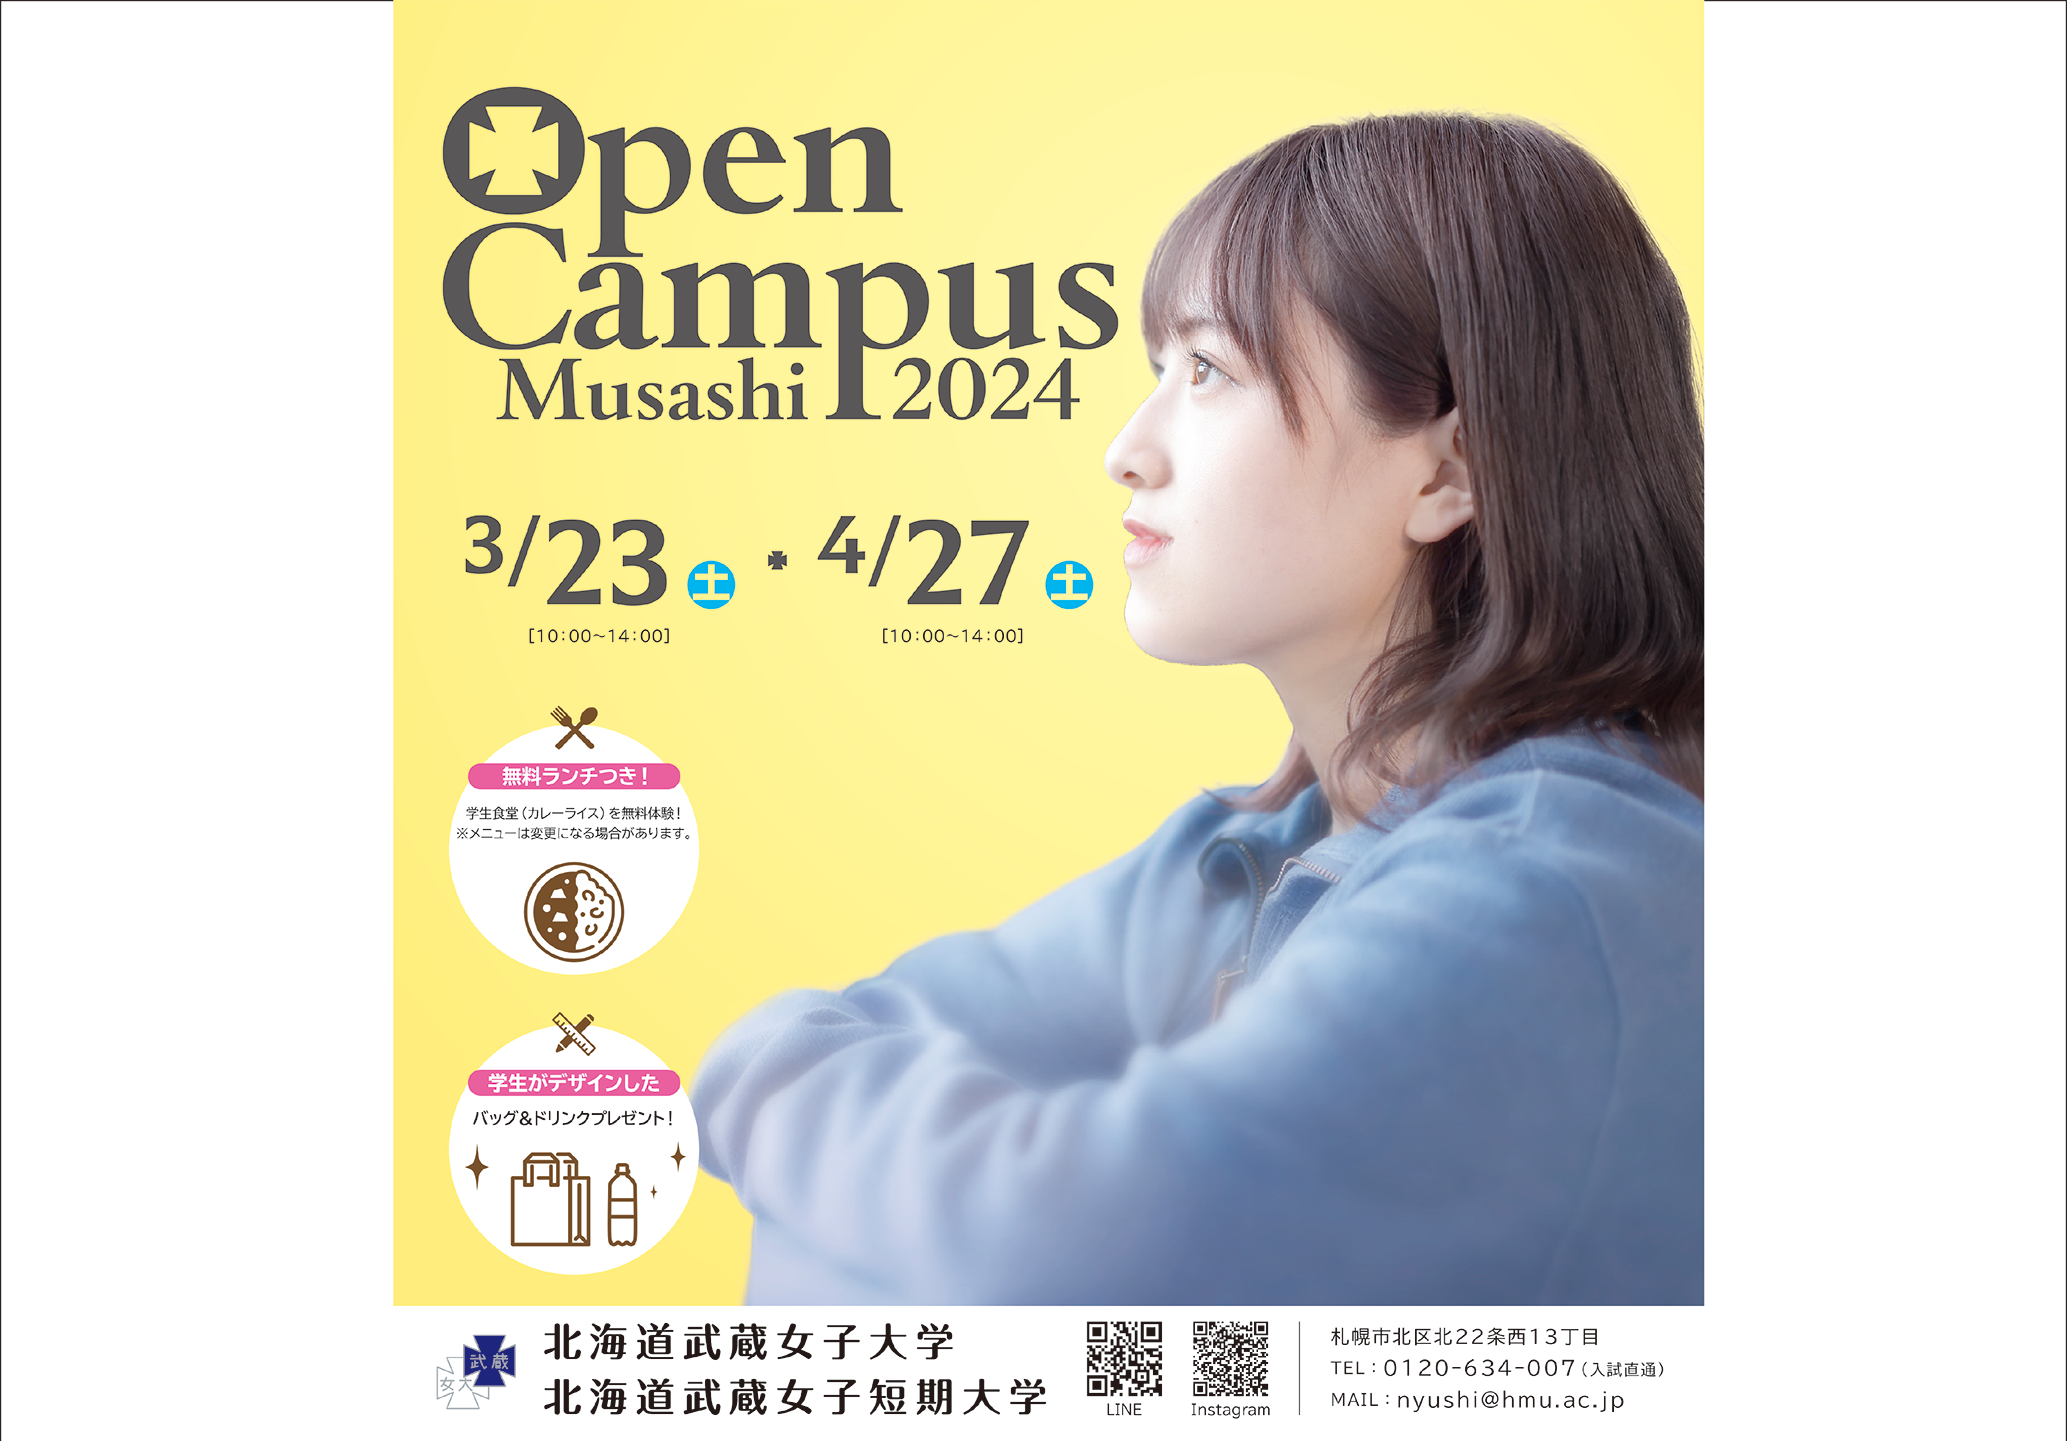 オープンキャンパス開催のお知らせ【4月27日(土)】